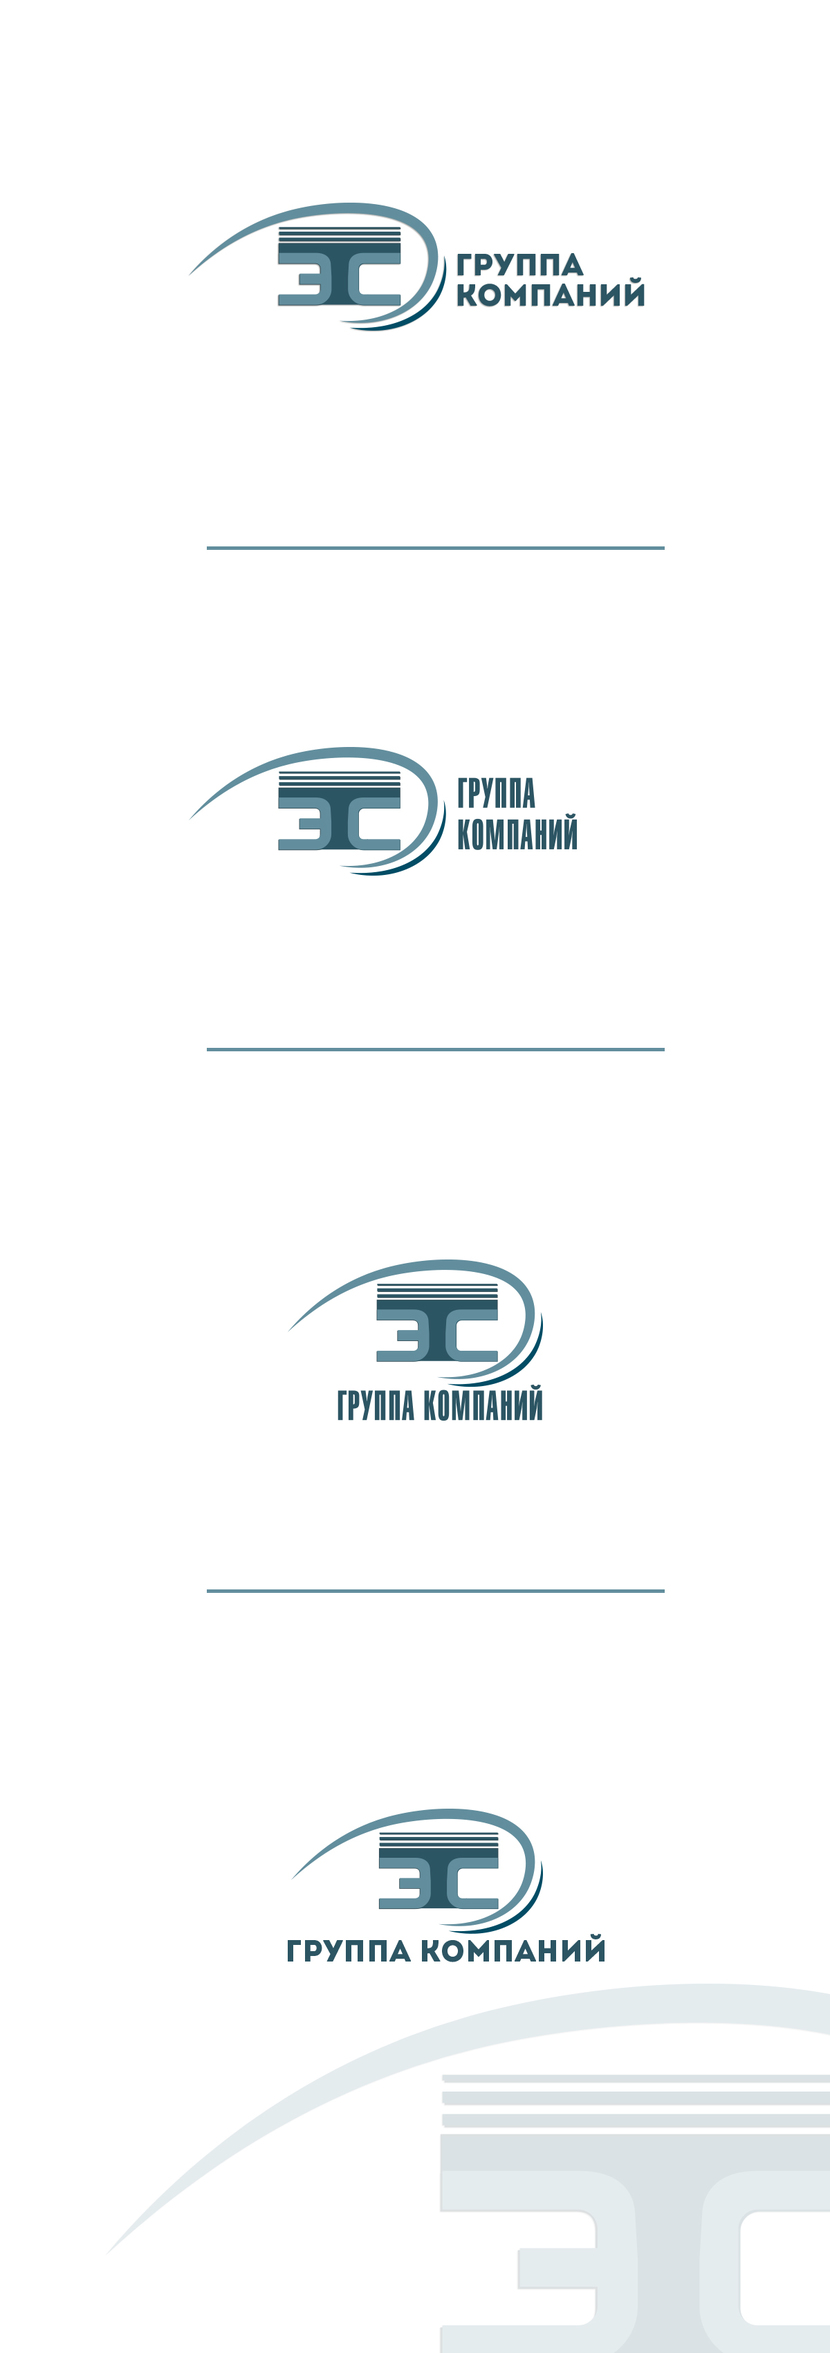 корректировки + горизонт. / вертикальная компоновка с Вашим и  новым шрифтом - Доработка логотипа и создание на его основе фирменного стиля для группы компаний "ТЭС"